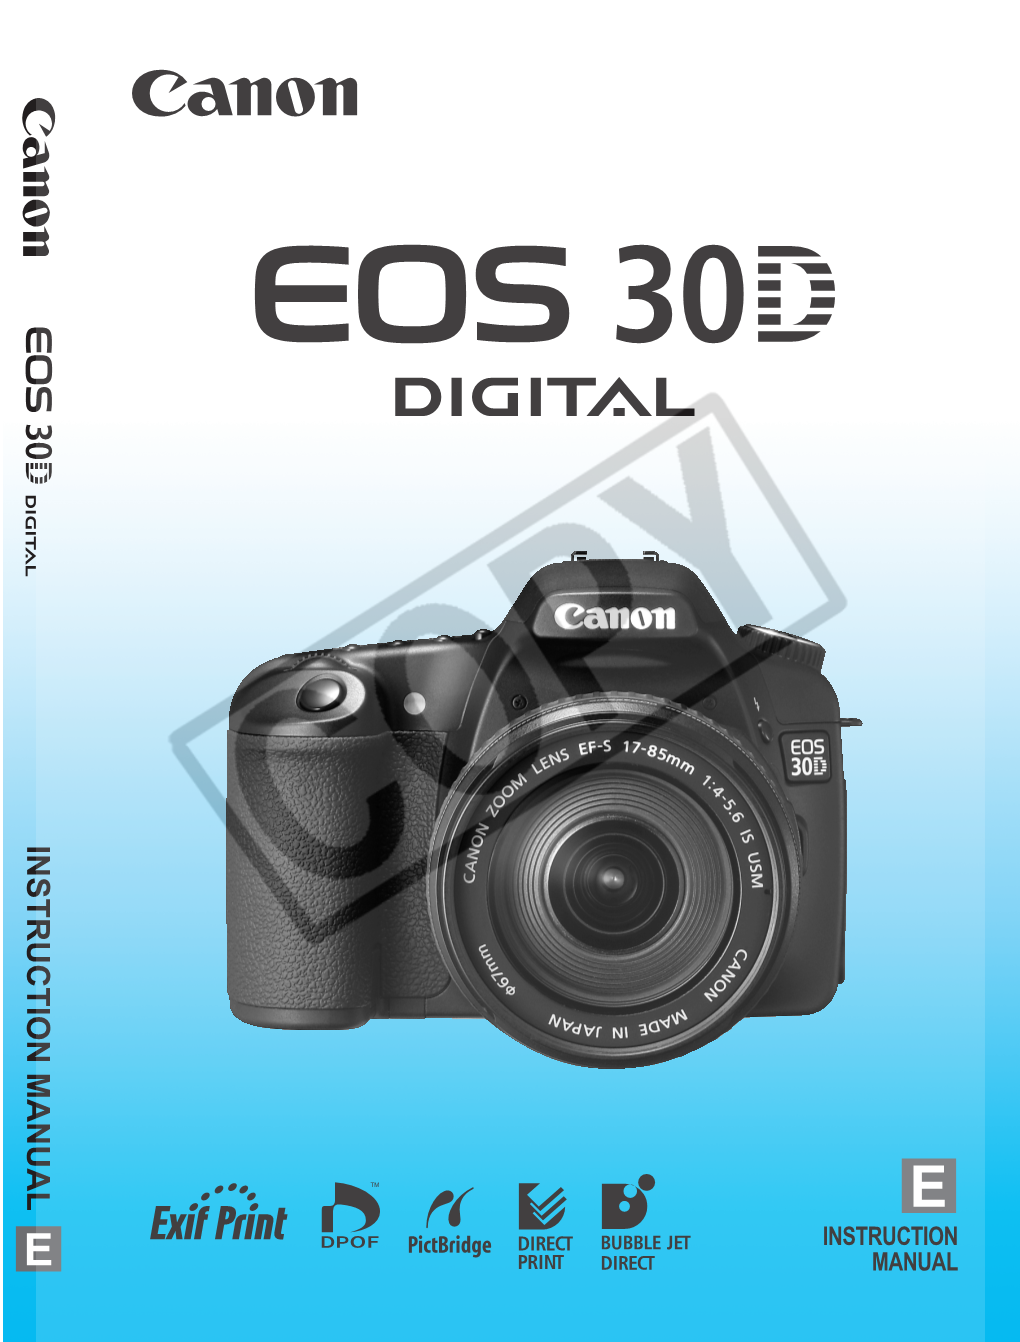 EOS 30D Is a High-Performance, Digital AF SLR Camera with a Large, Fine-Detail, 8.20-Megapixel CMOS Sensor